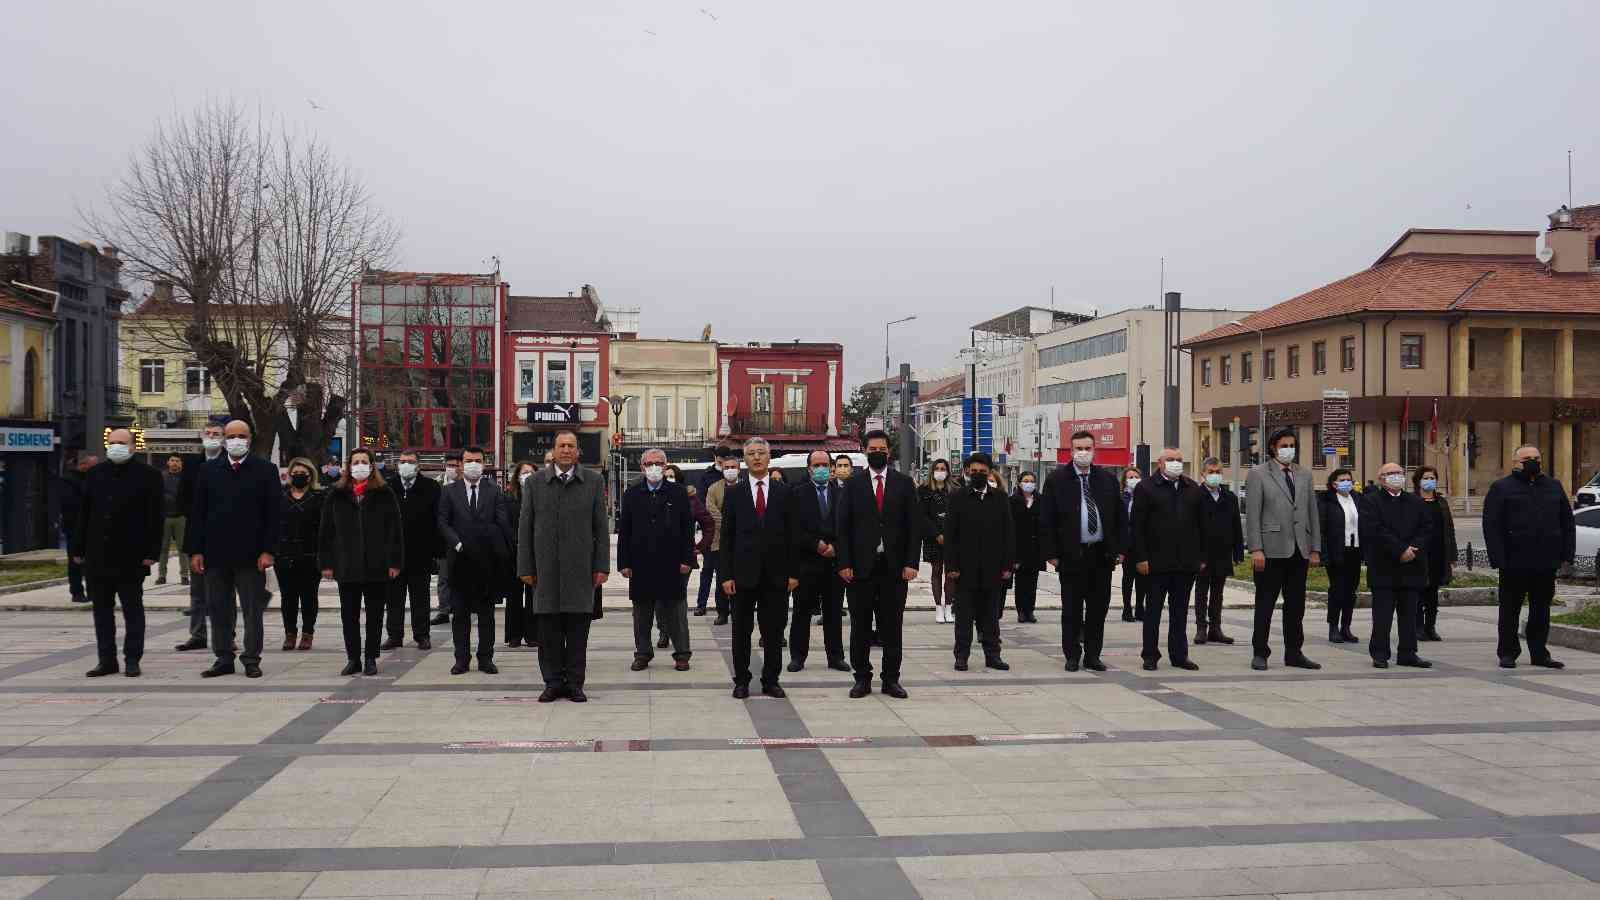 Edirne’de 33. Vergi Haftası düzenlenen törenle başladı #edirne